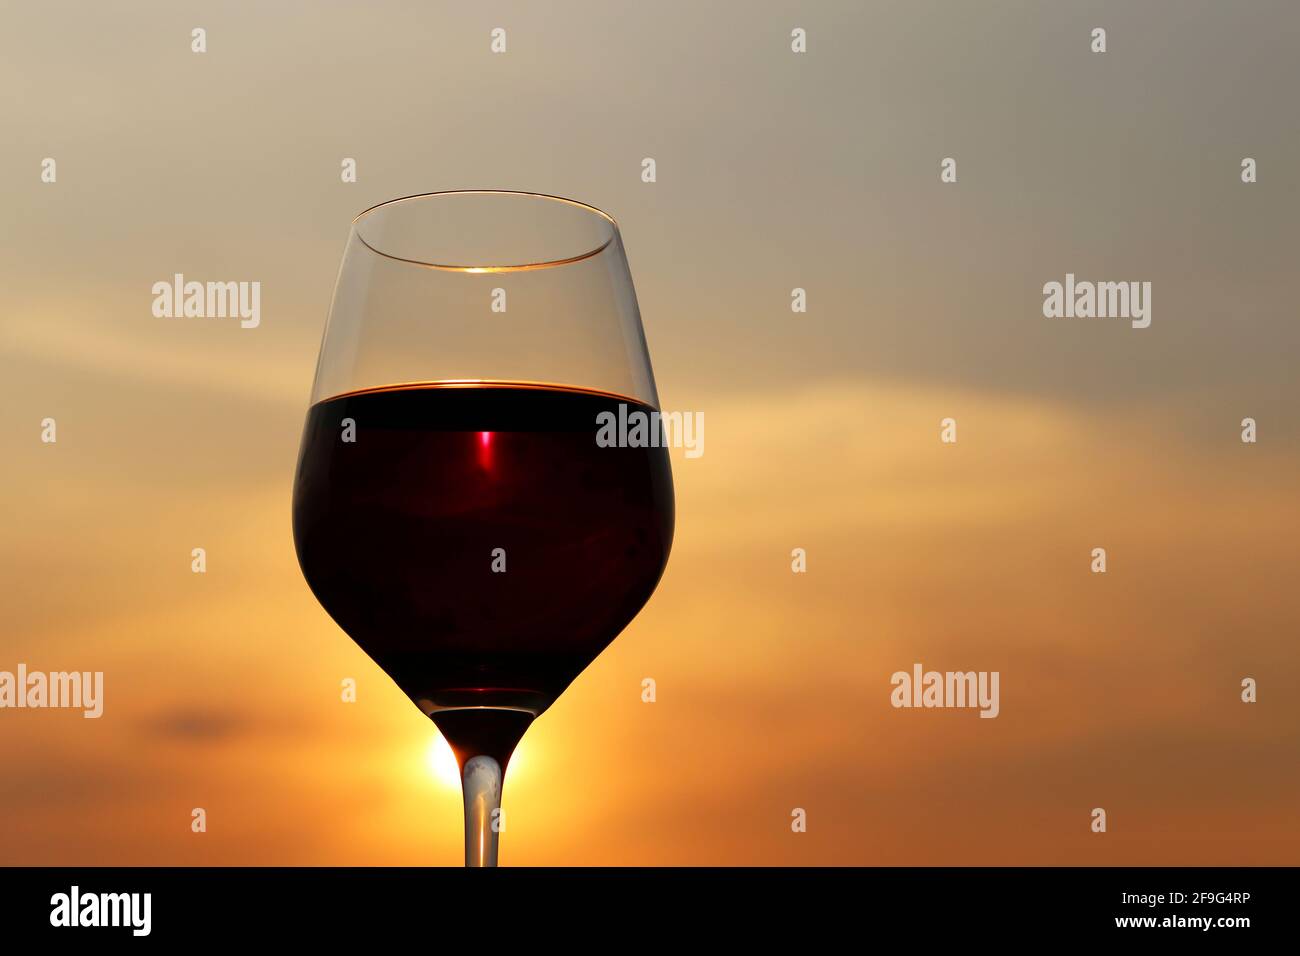 Glas mit Rotwein auf Sonnenuntergang Hintergrund, Abendsonne scheint durch das Glas. Konzept der Feier, Weinindustrie Stockfoto